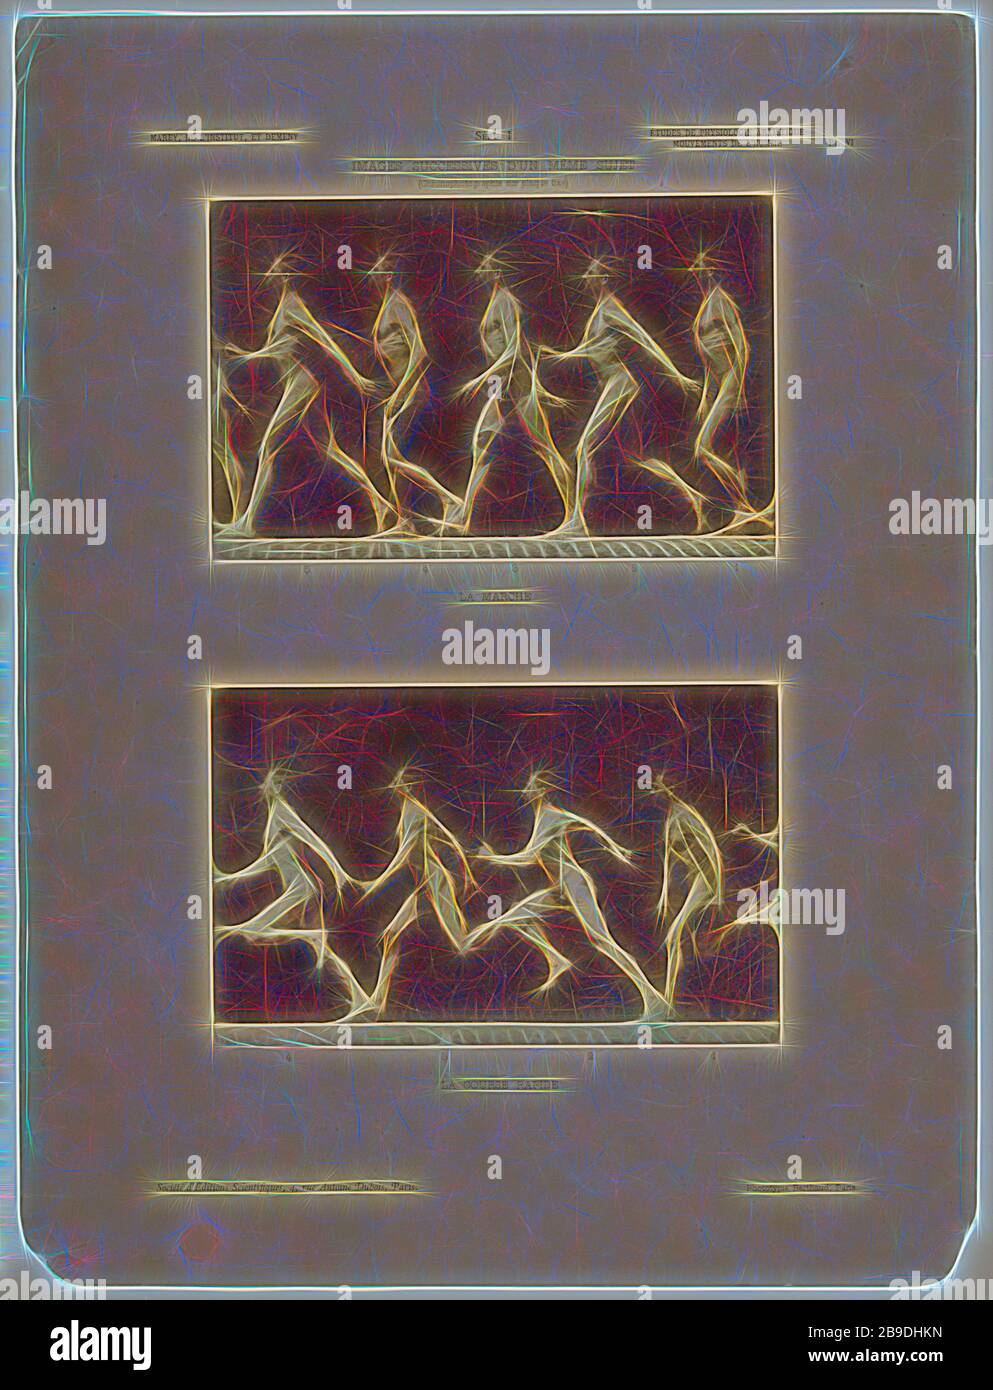 La Marche , la Course Rapide, Étienne Jules Marey (francese, 1830 - 1904), Michel Berthaud (francese, attivo 1860s - 1880s), negativo circa 1890, pubblicato 1893, Collotype, 11,3 x 17,6 cm (4 7,16 x 6 15,16 in, Reimagined by Gibon, disegno di calore allegro di luminosità e raggi di luce radianza. Arte classica reinventata con un tocco moderno. La fotografia ispirata al futurismo, che abbraccia l'energia dinamica della tecnologia moderna, del movimento, della velocità e rivoluziona la cultura. Foto Stock